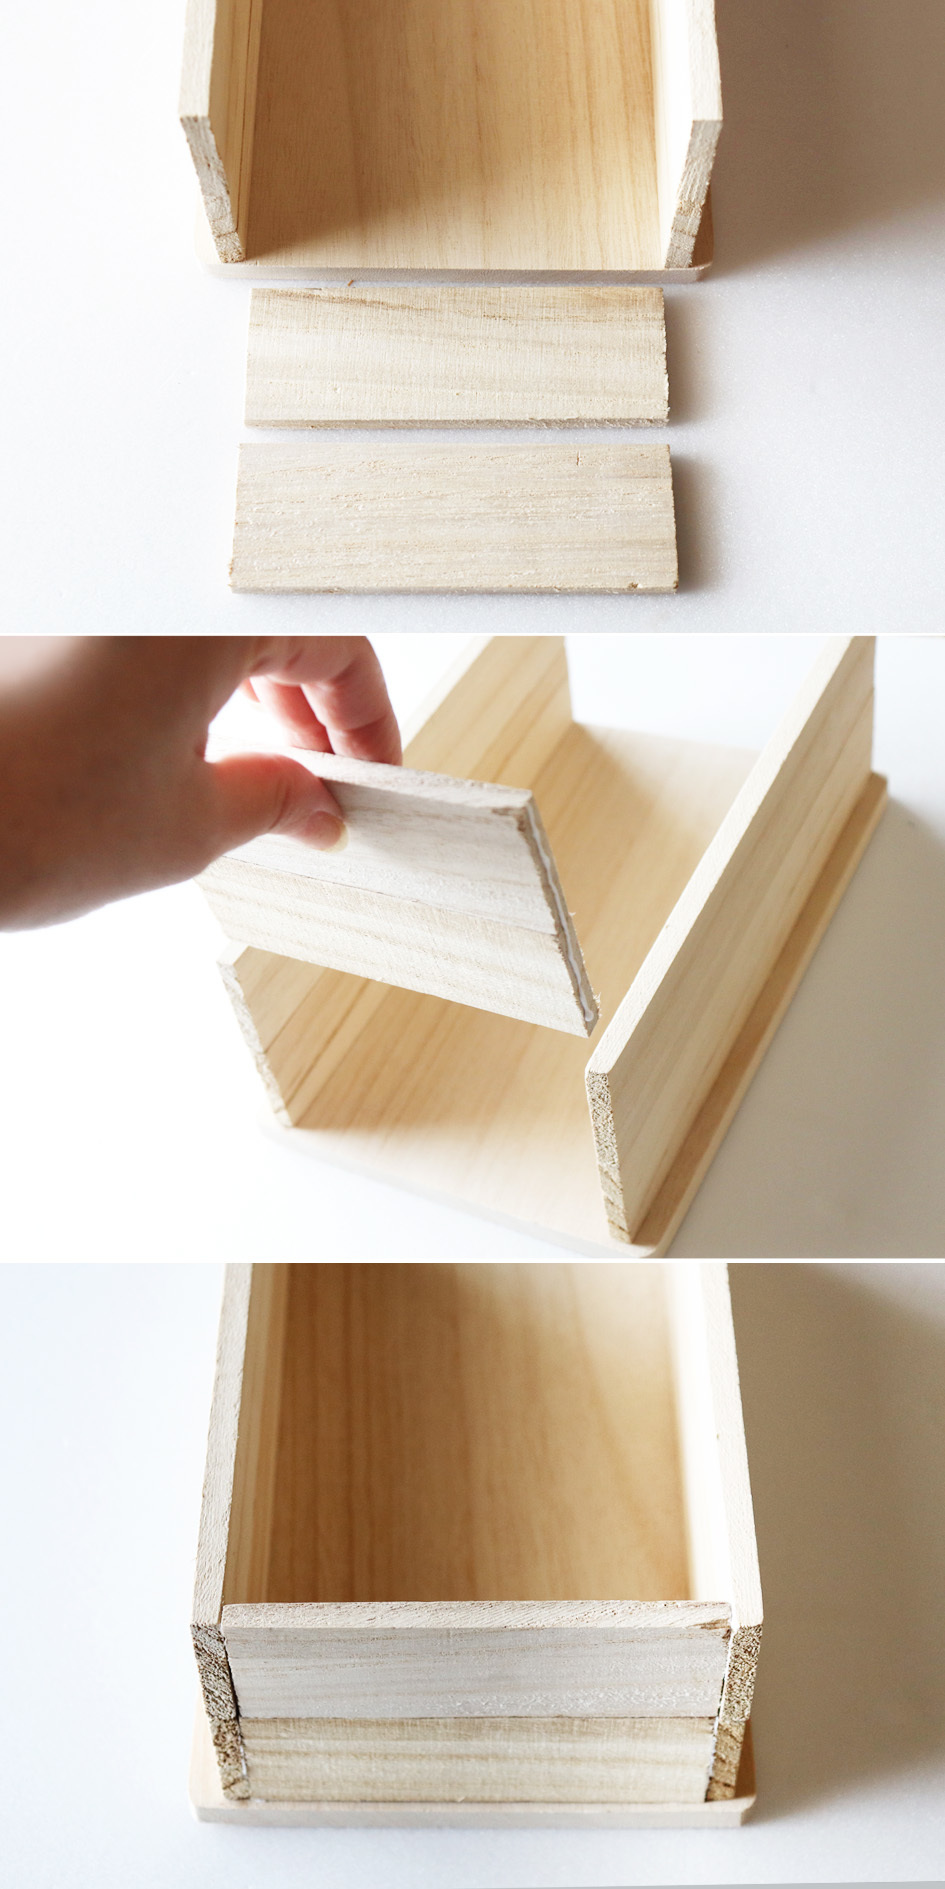 材料費500円☆セリアのまな板と木製ケースで簡単DIY☆_d0351435_11210853.jpg